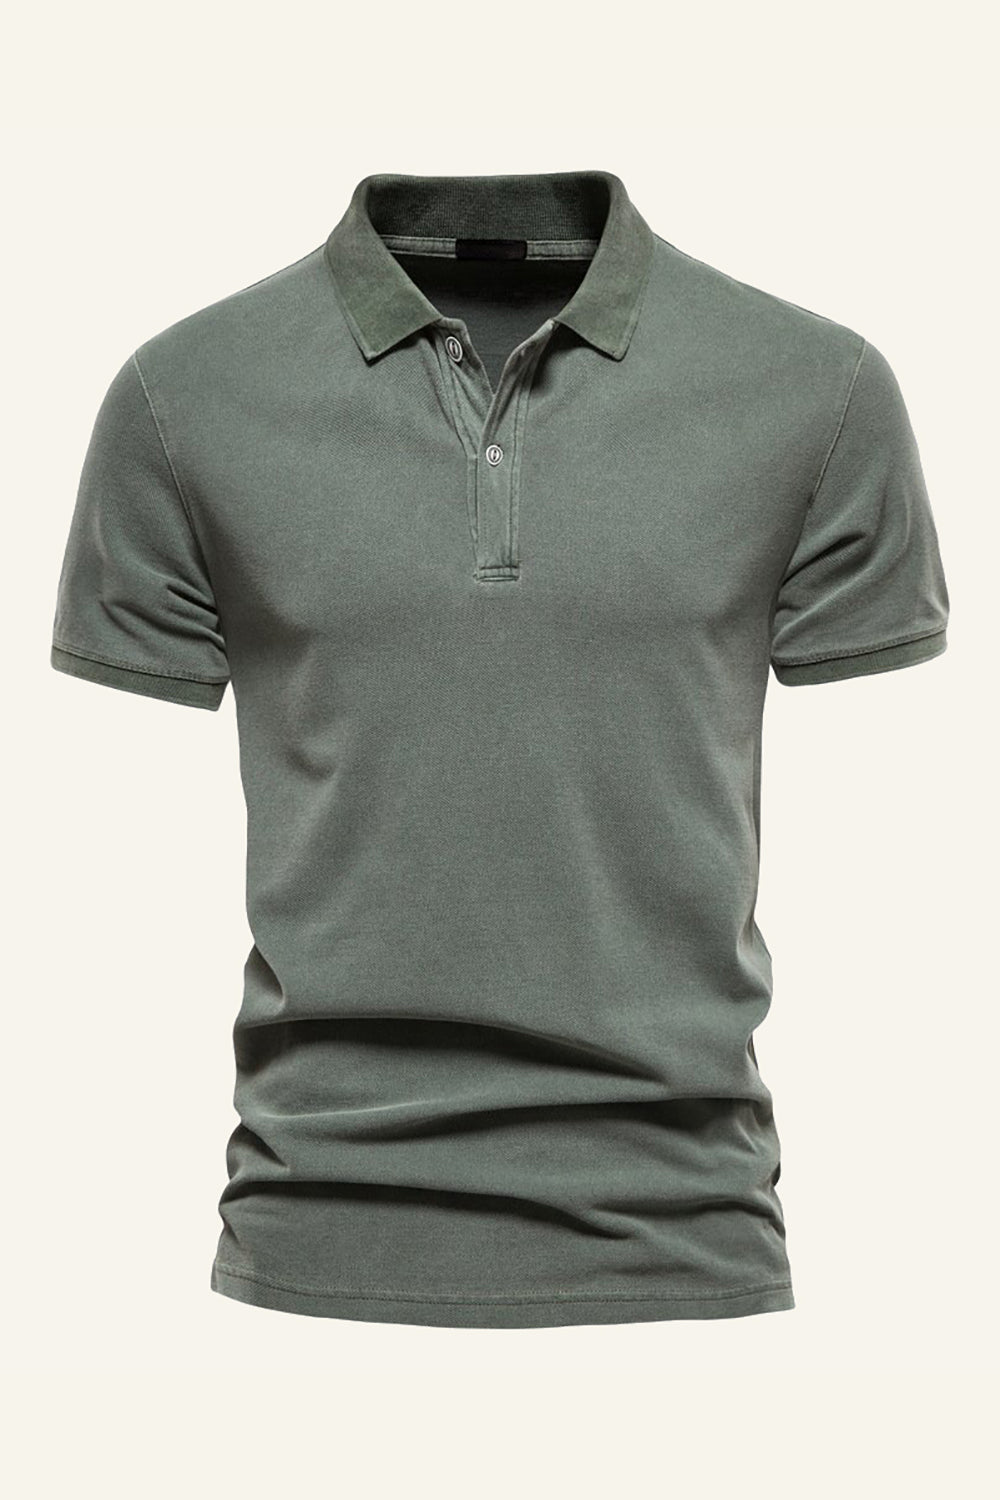 Grey Green Cotton Sport Polo Shirt